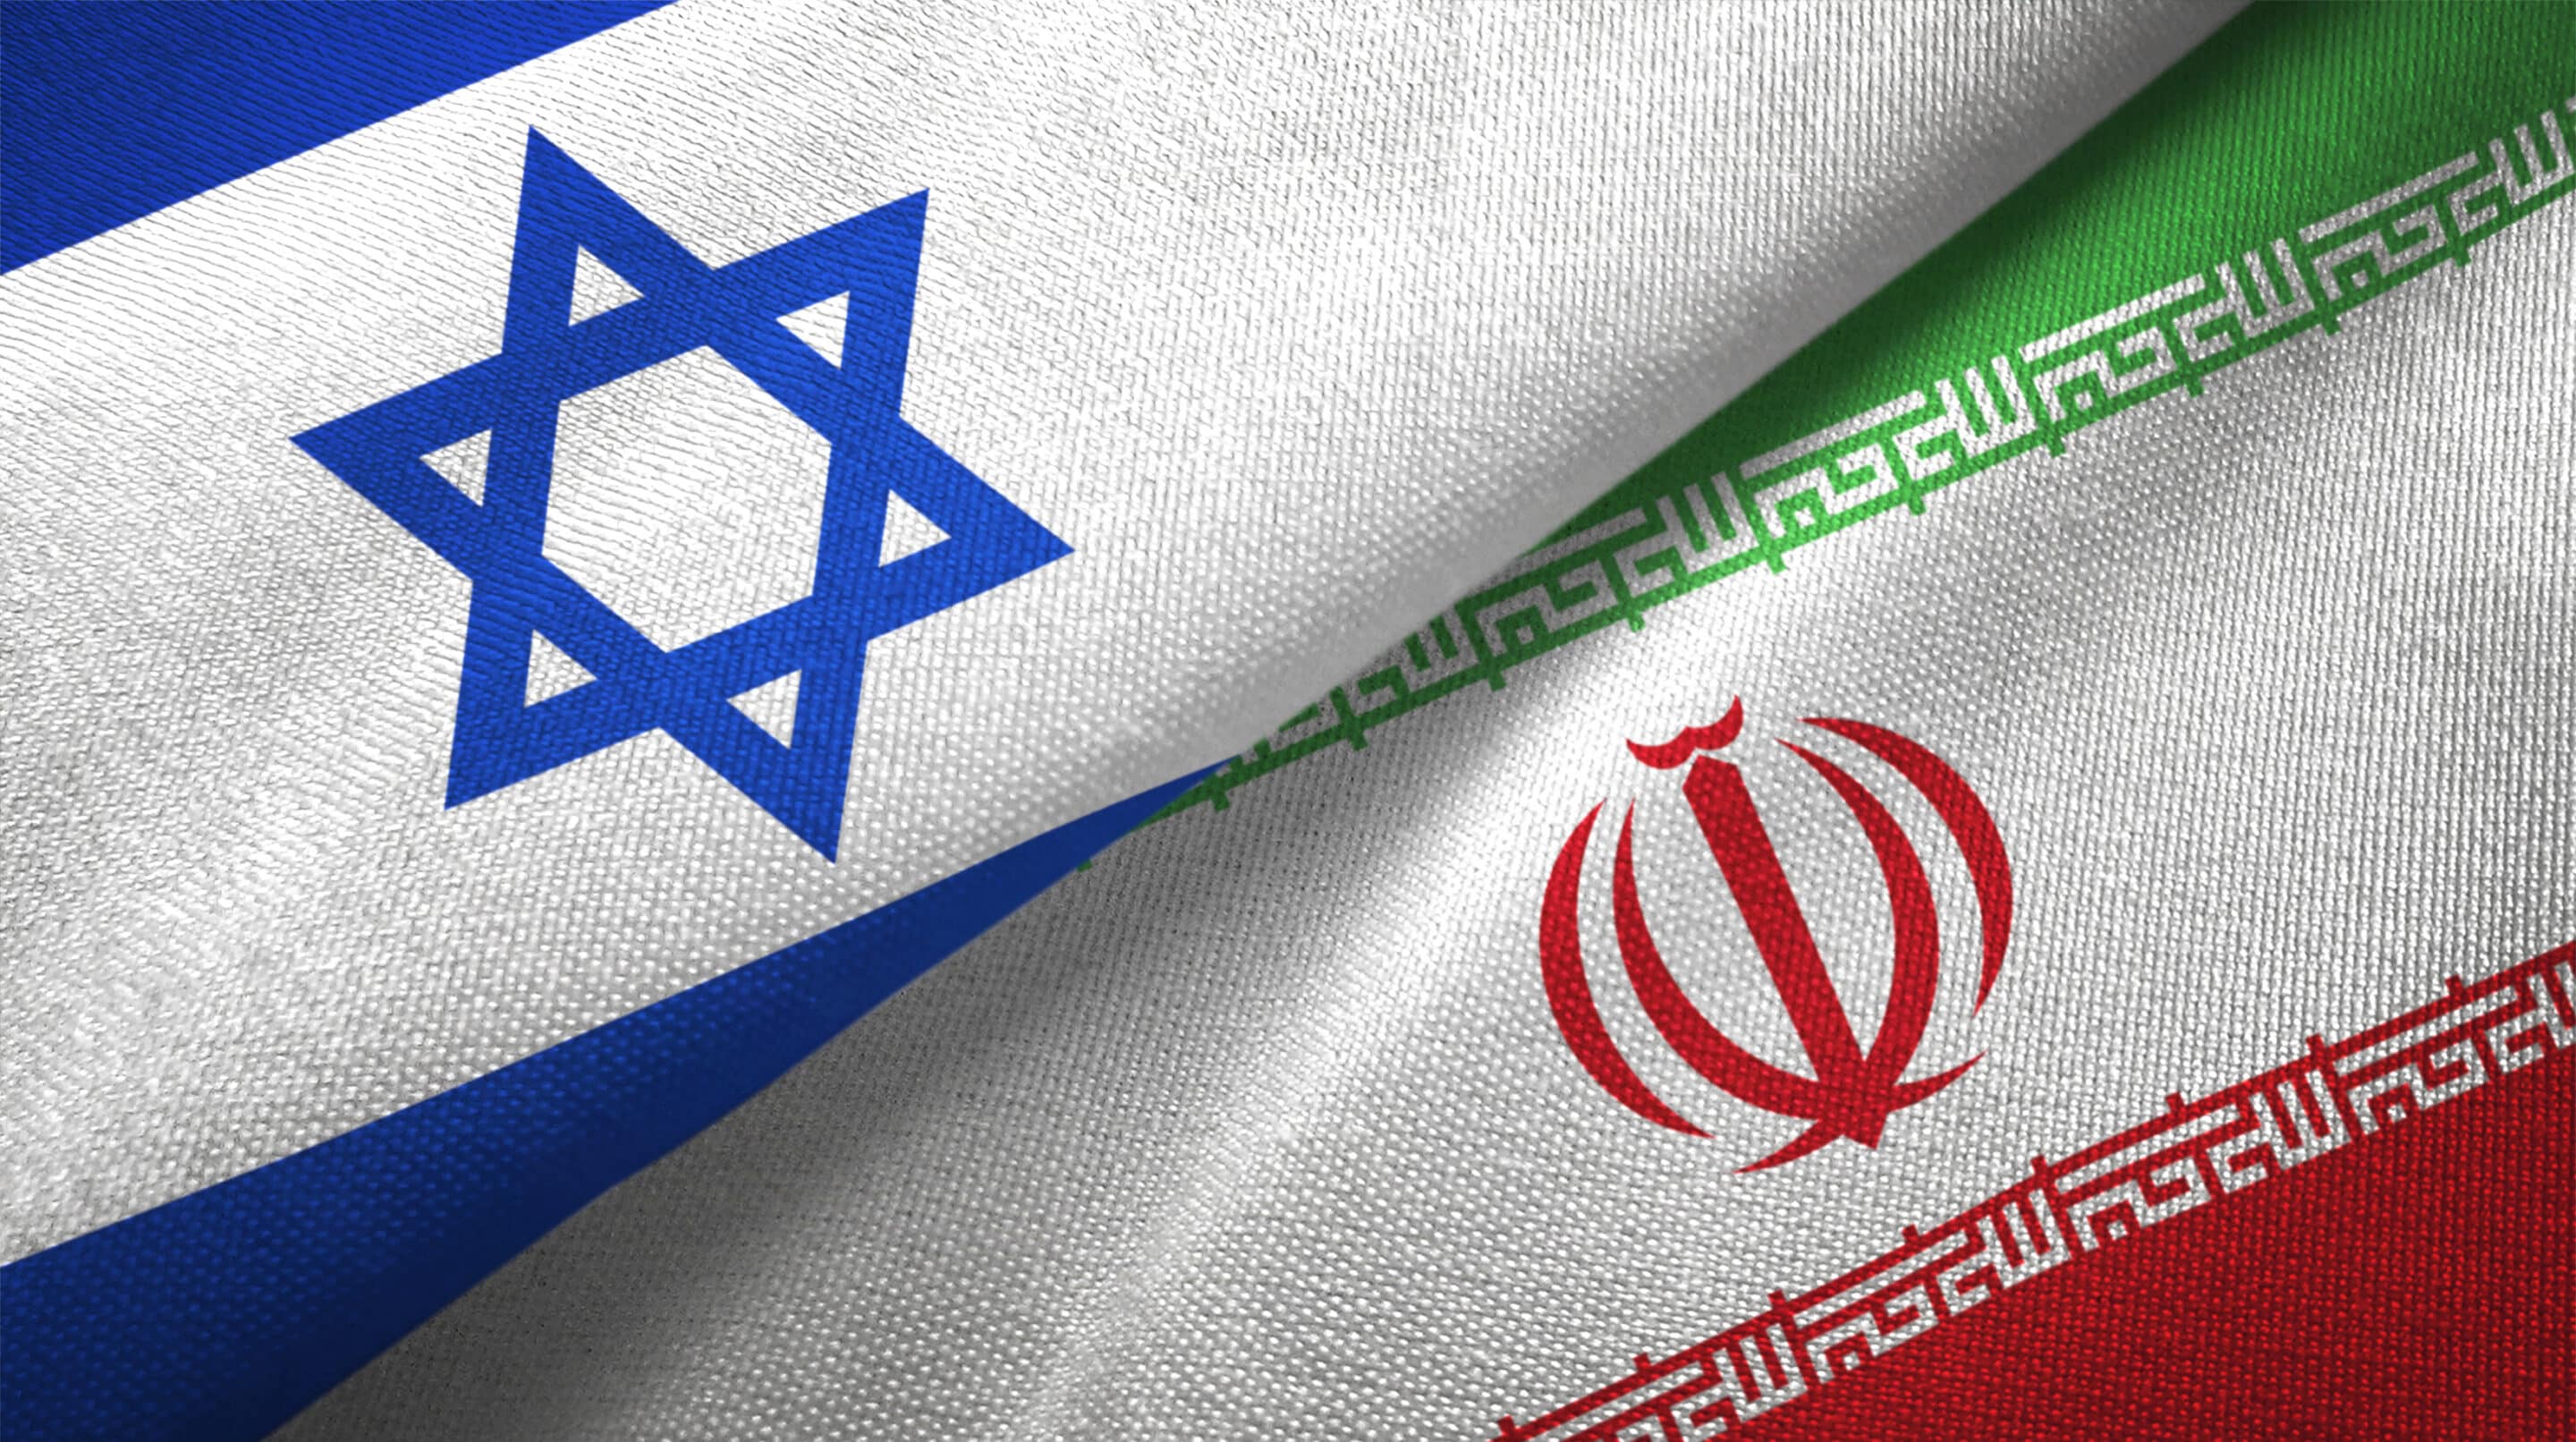 Chmelár: politici rázne odsúdili útok Iránu na Izrael. Zámerne však vynechali kontext celého sporu. 5